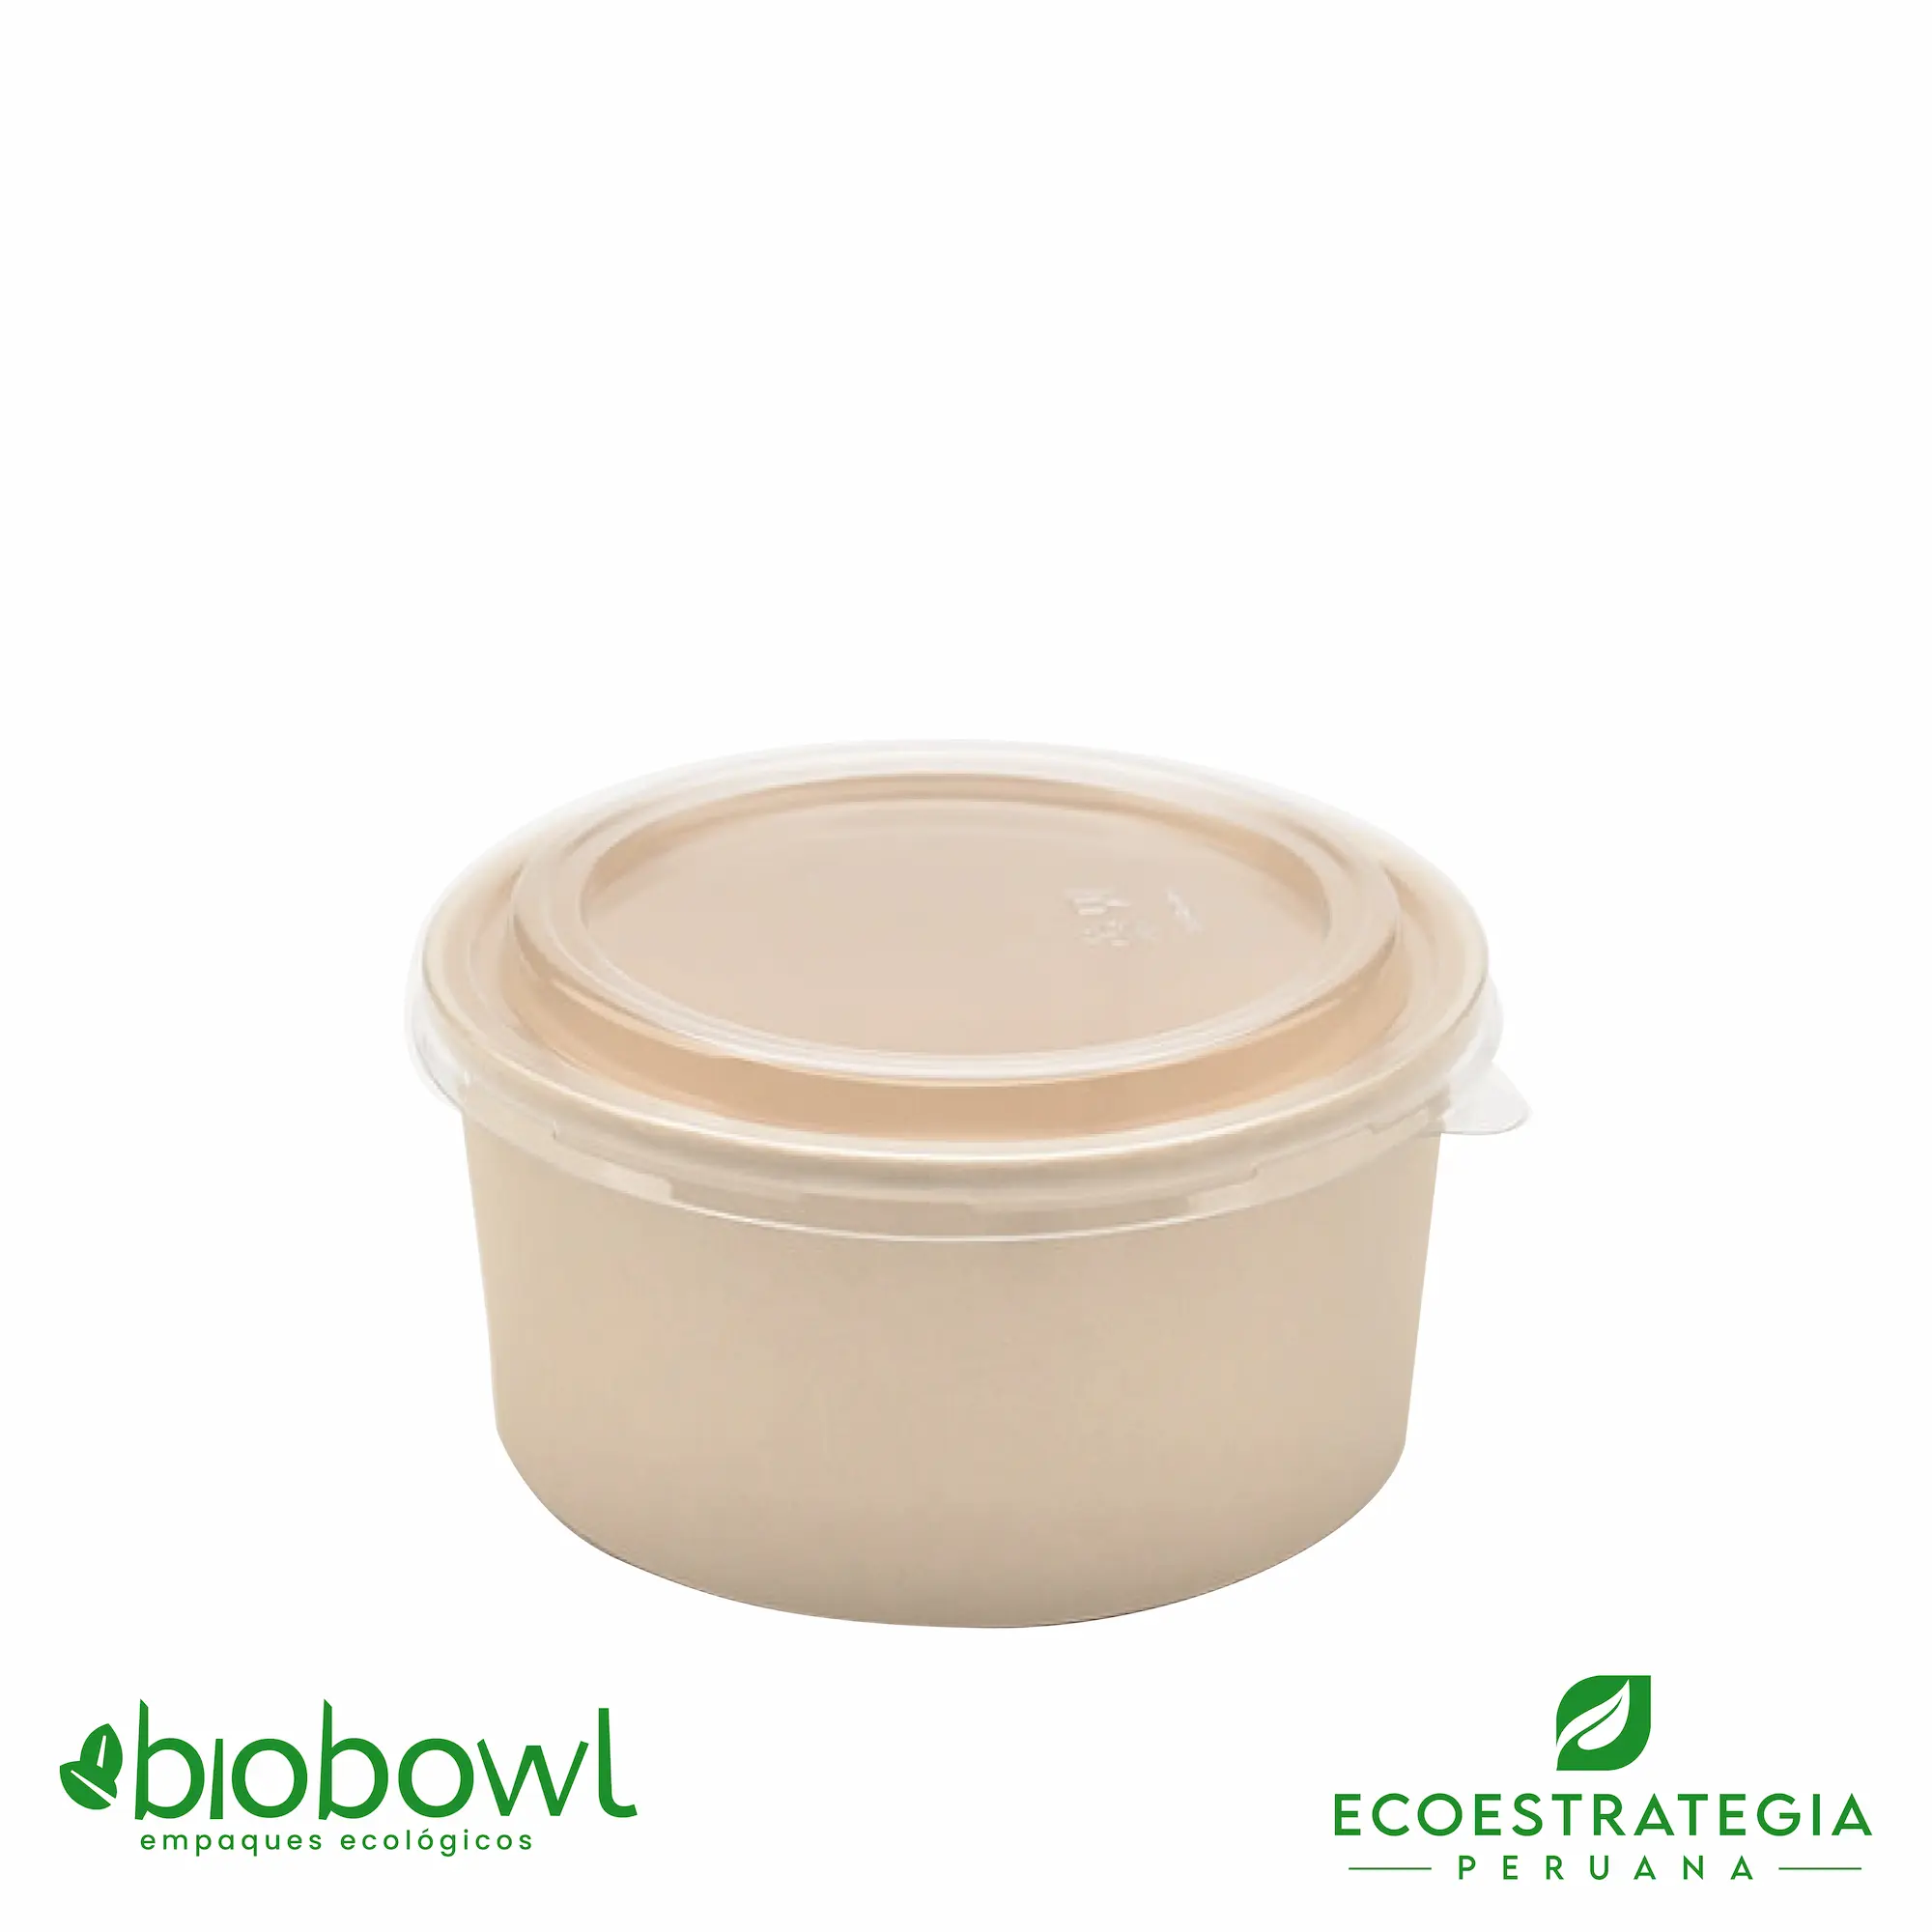 El bowl bambú biodegradable DE 600ml o EP-600, es también conocido como bowl bamboo 600ml, bambú sopero 600ml, bambú salad 600ml, bowl para ensalada con tapa pet 600ml o sopero con fibra de bambú 600ml, bowl bambú ecologico, bowl bambú reciclable, bowl descartable, bowl bambu postres 600ml, bowl bambu helados 600ml